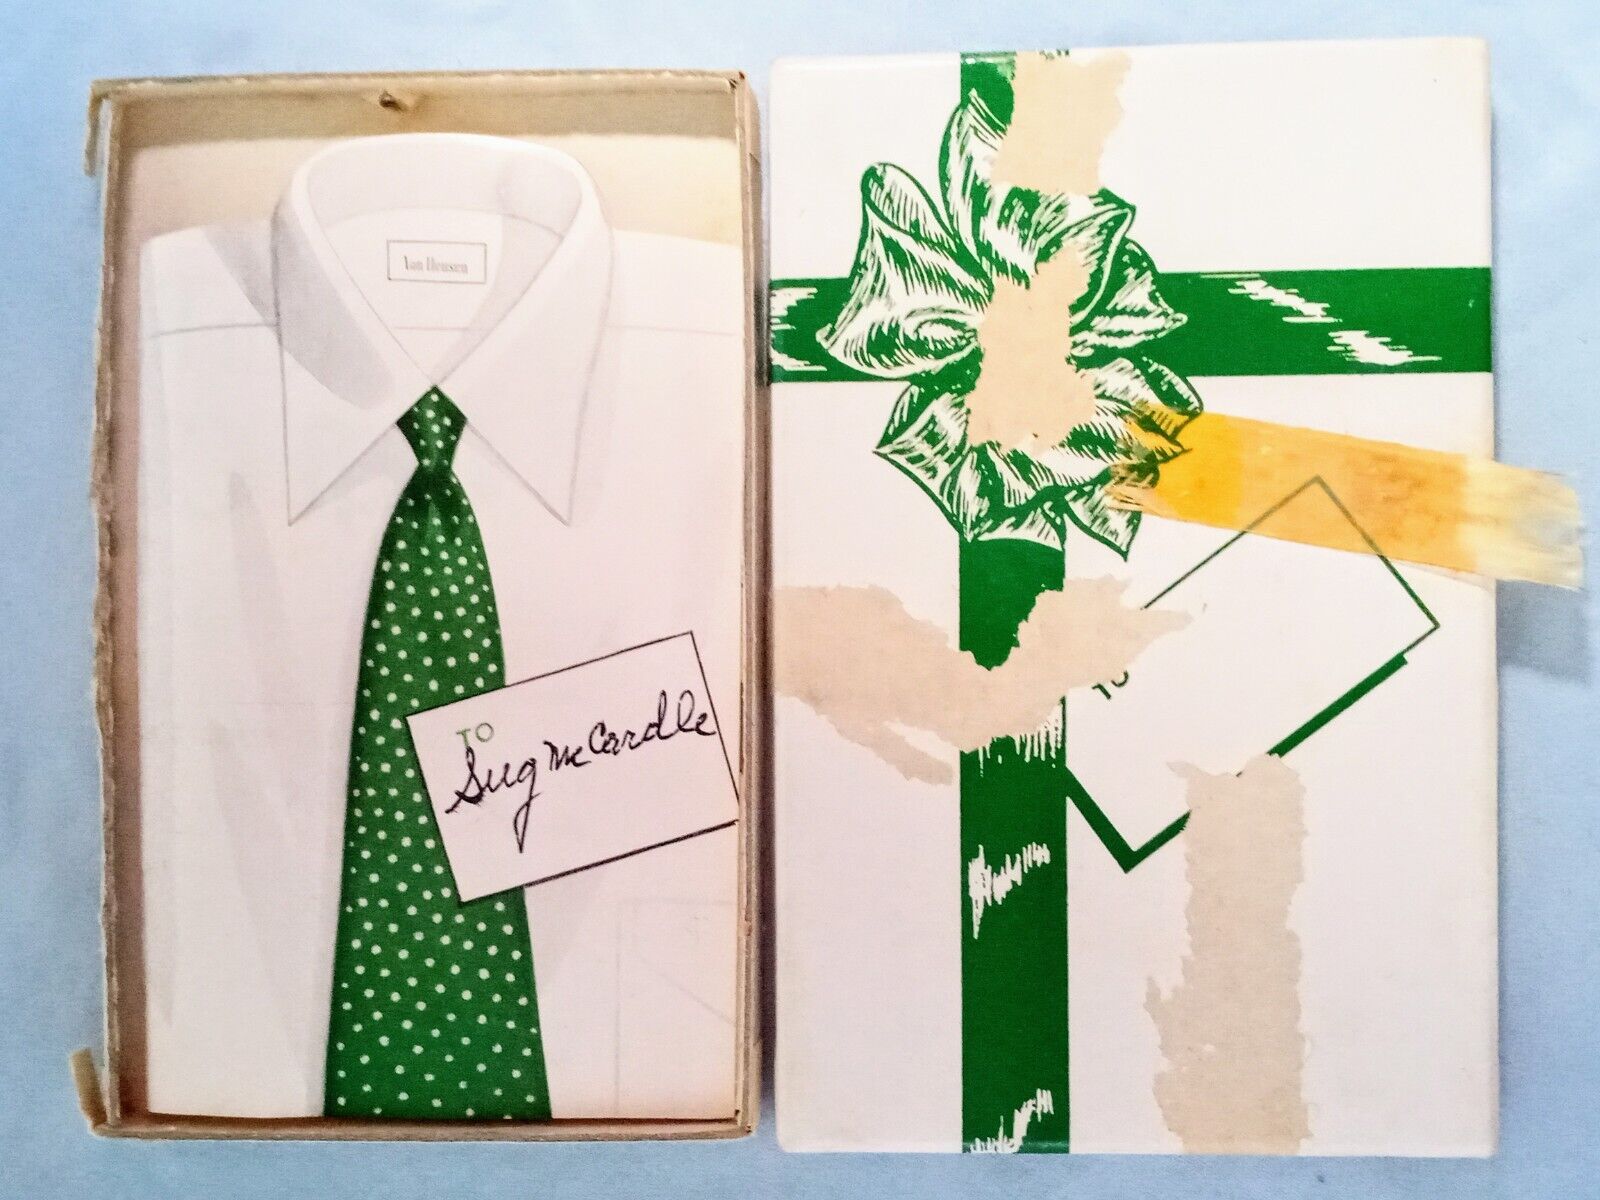 Vintage Van Heusen Paper Shirt & Tie 1940s $30 Gift Certificate In Gift Box